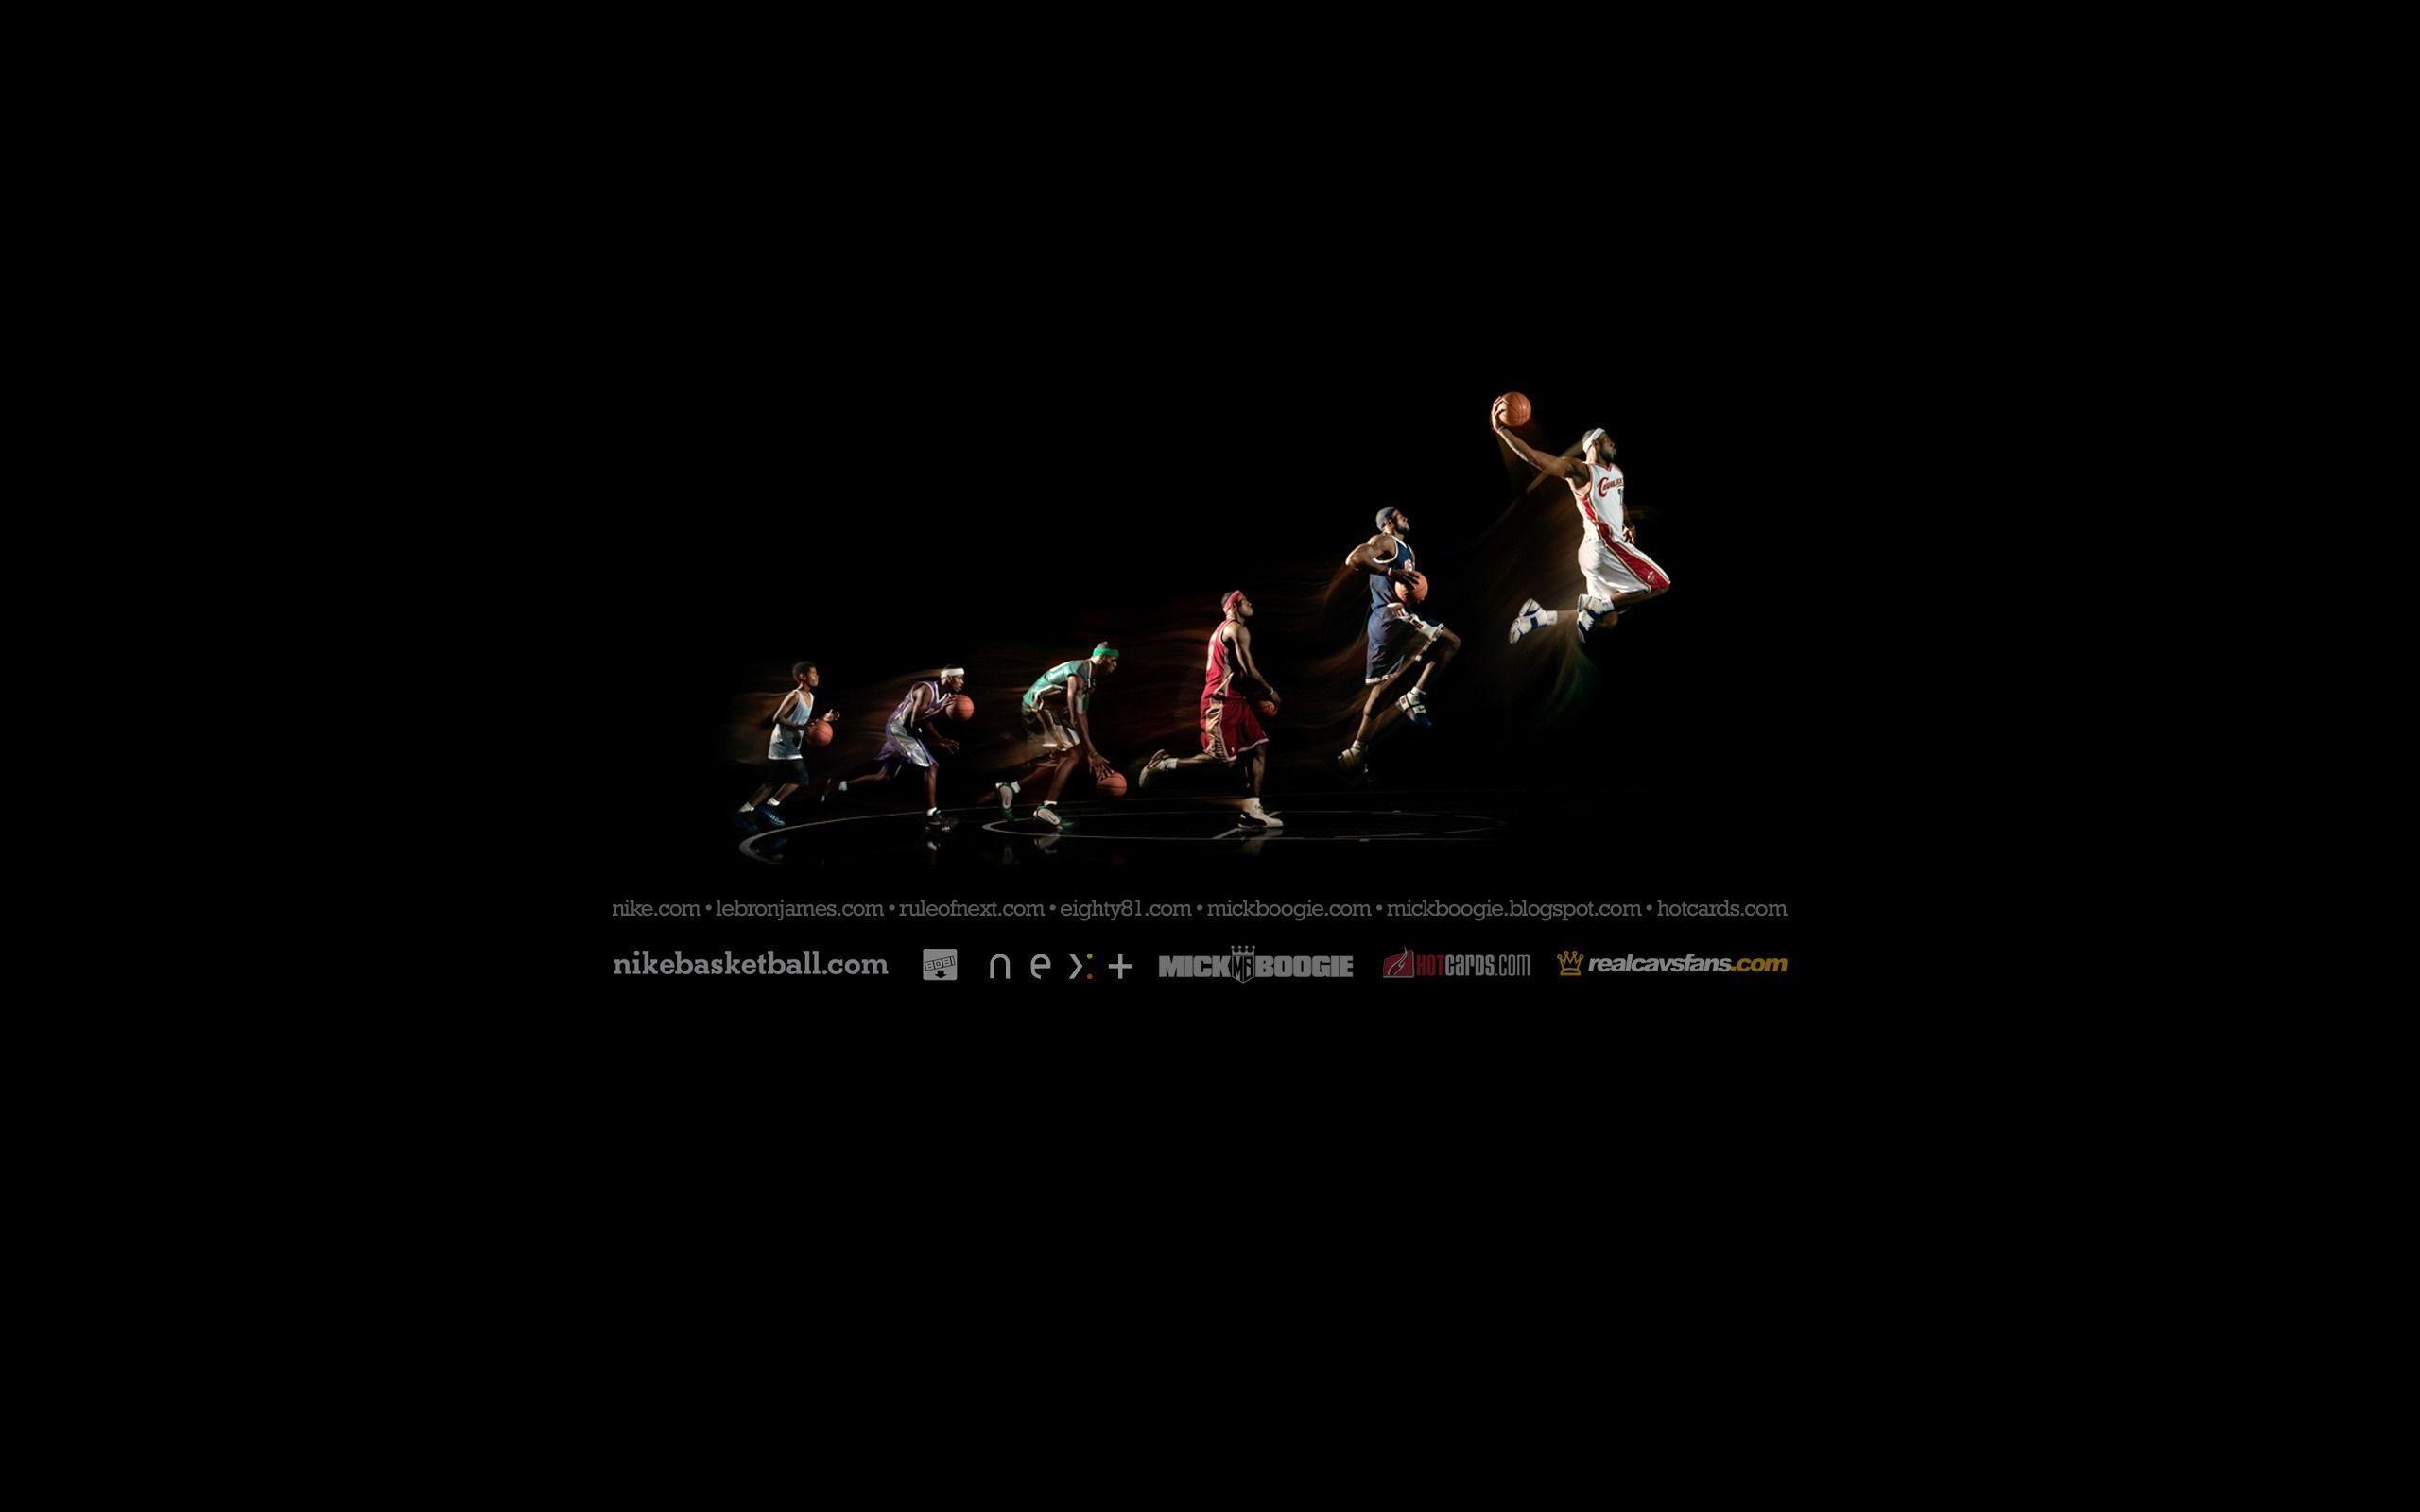 HD Basketball Wallpaper